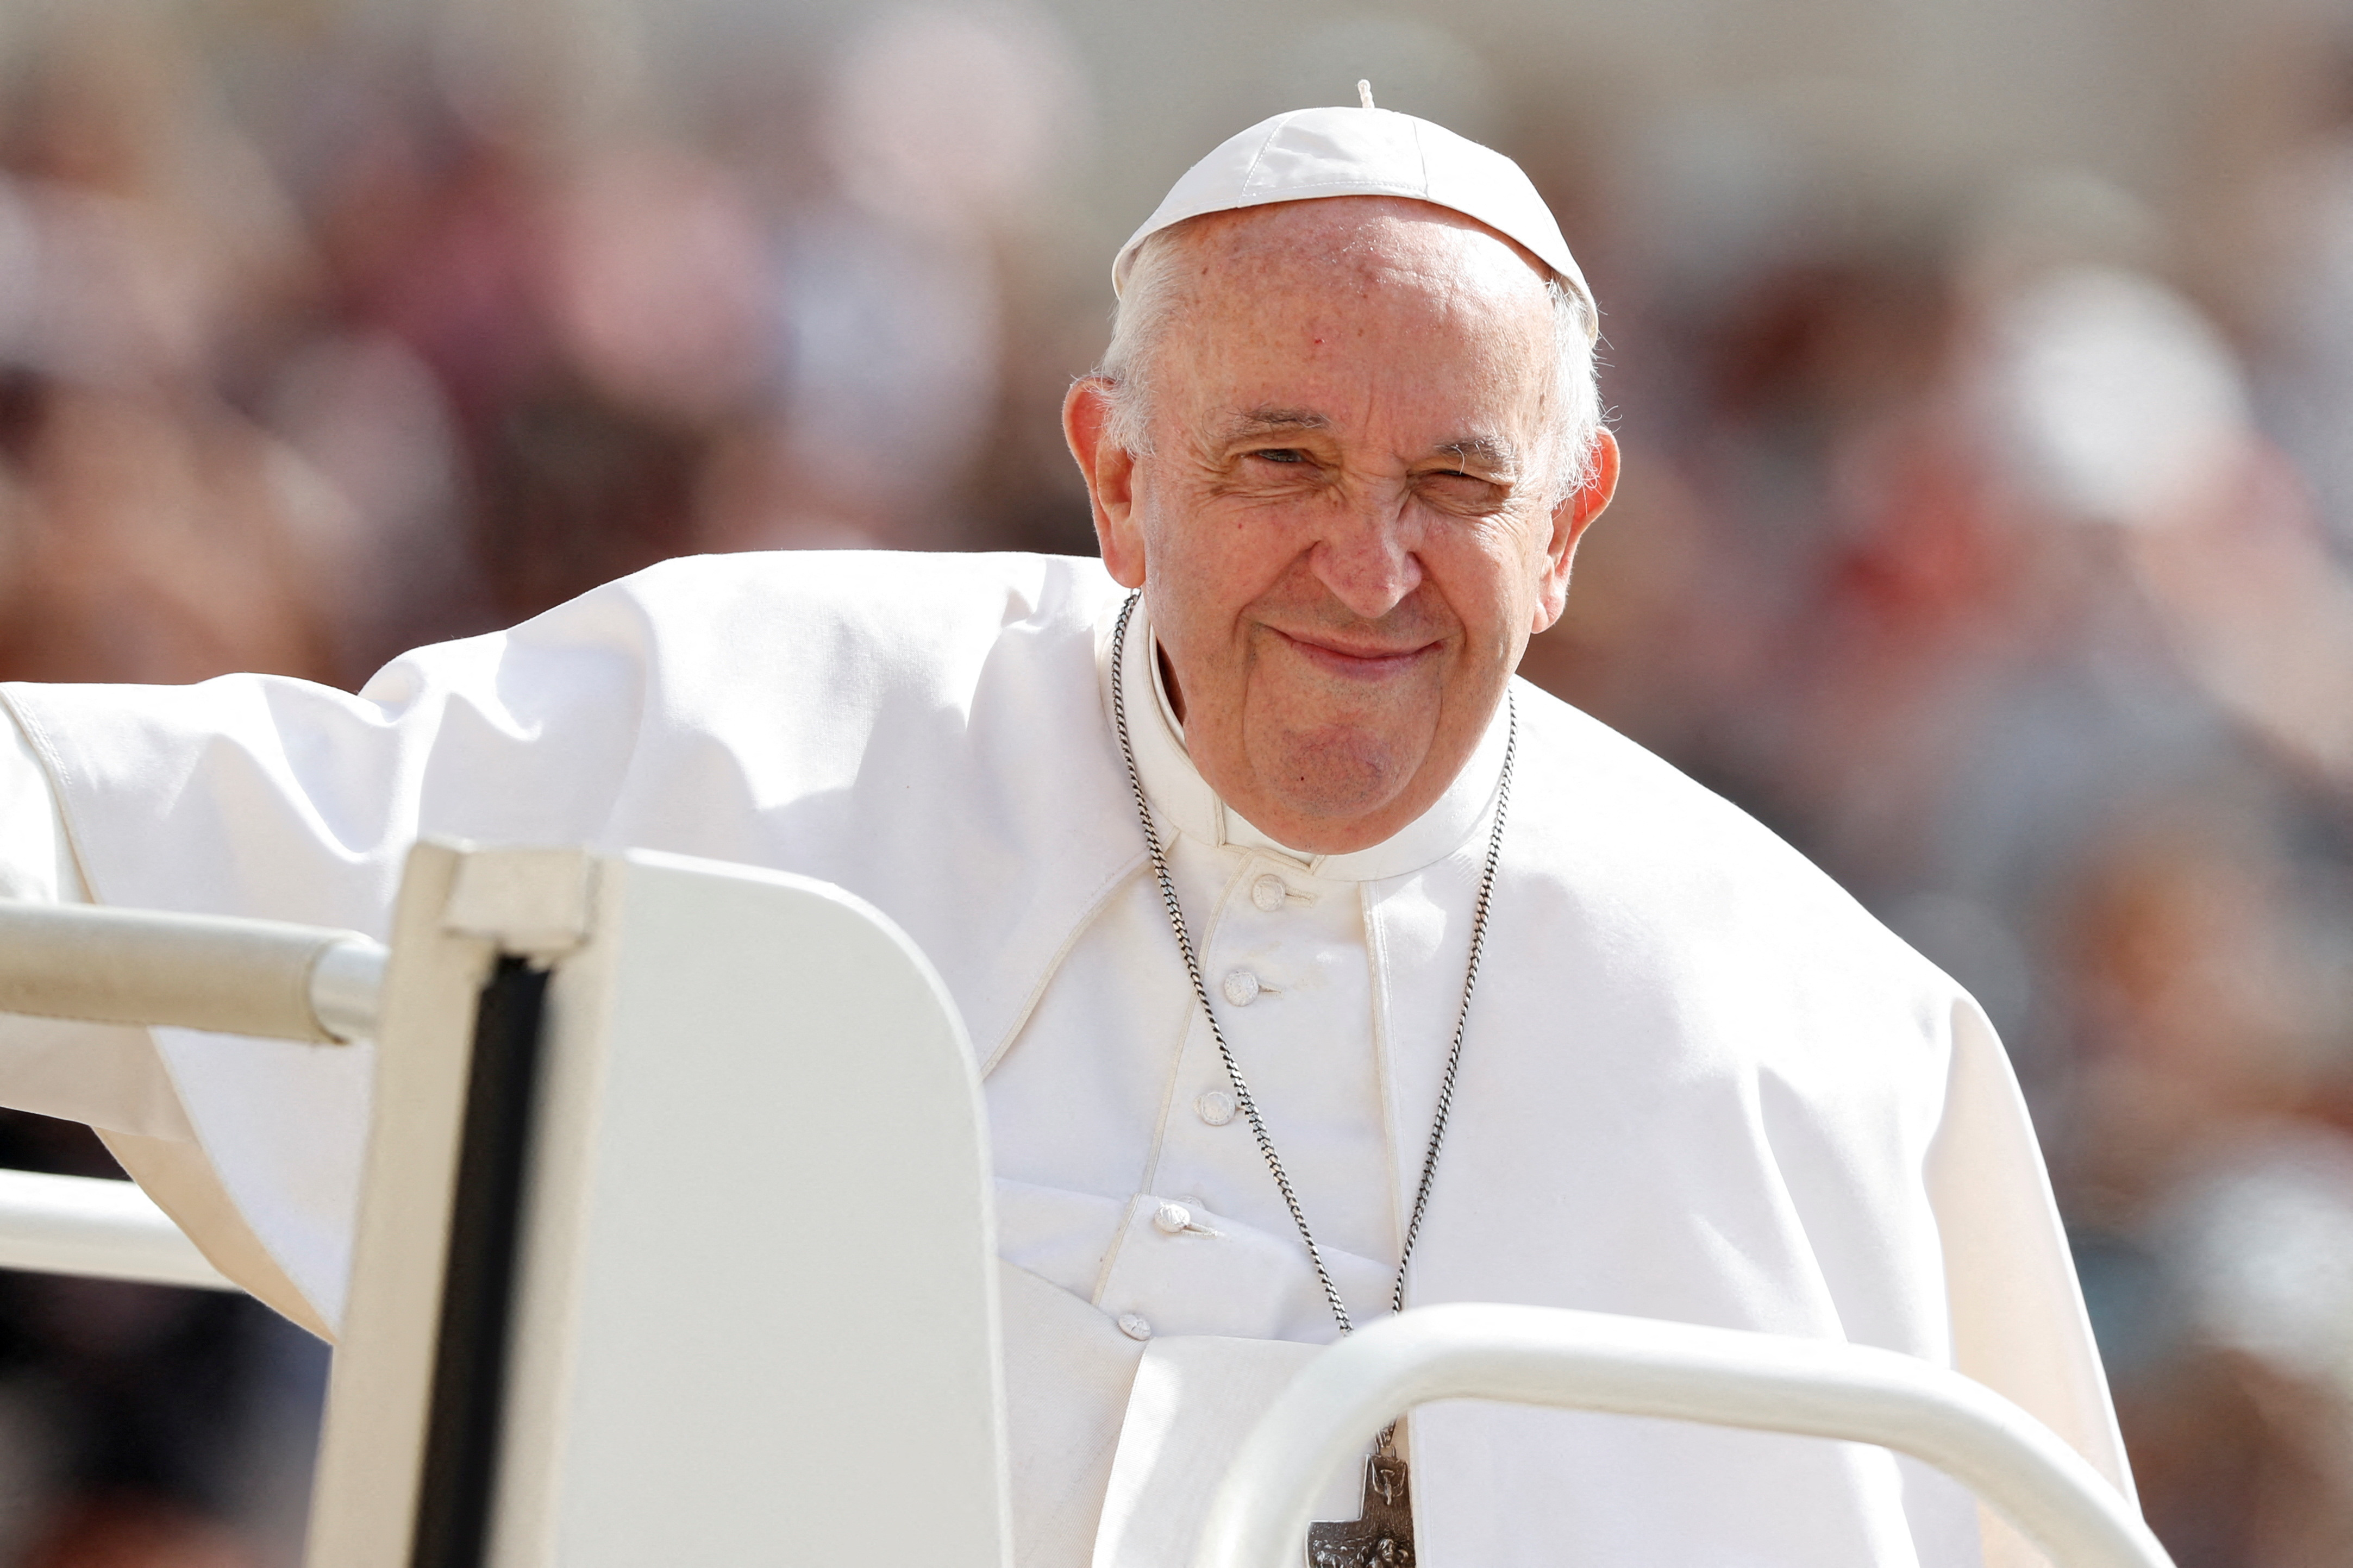  “La violencia no resuelve problemas, aumenta el sufrimiento”, pronunció el Papa Francisco

REUTERS/Remo Casilli